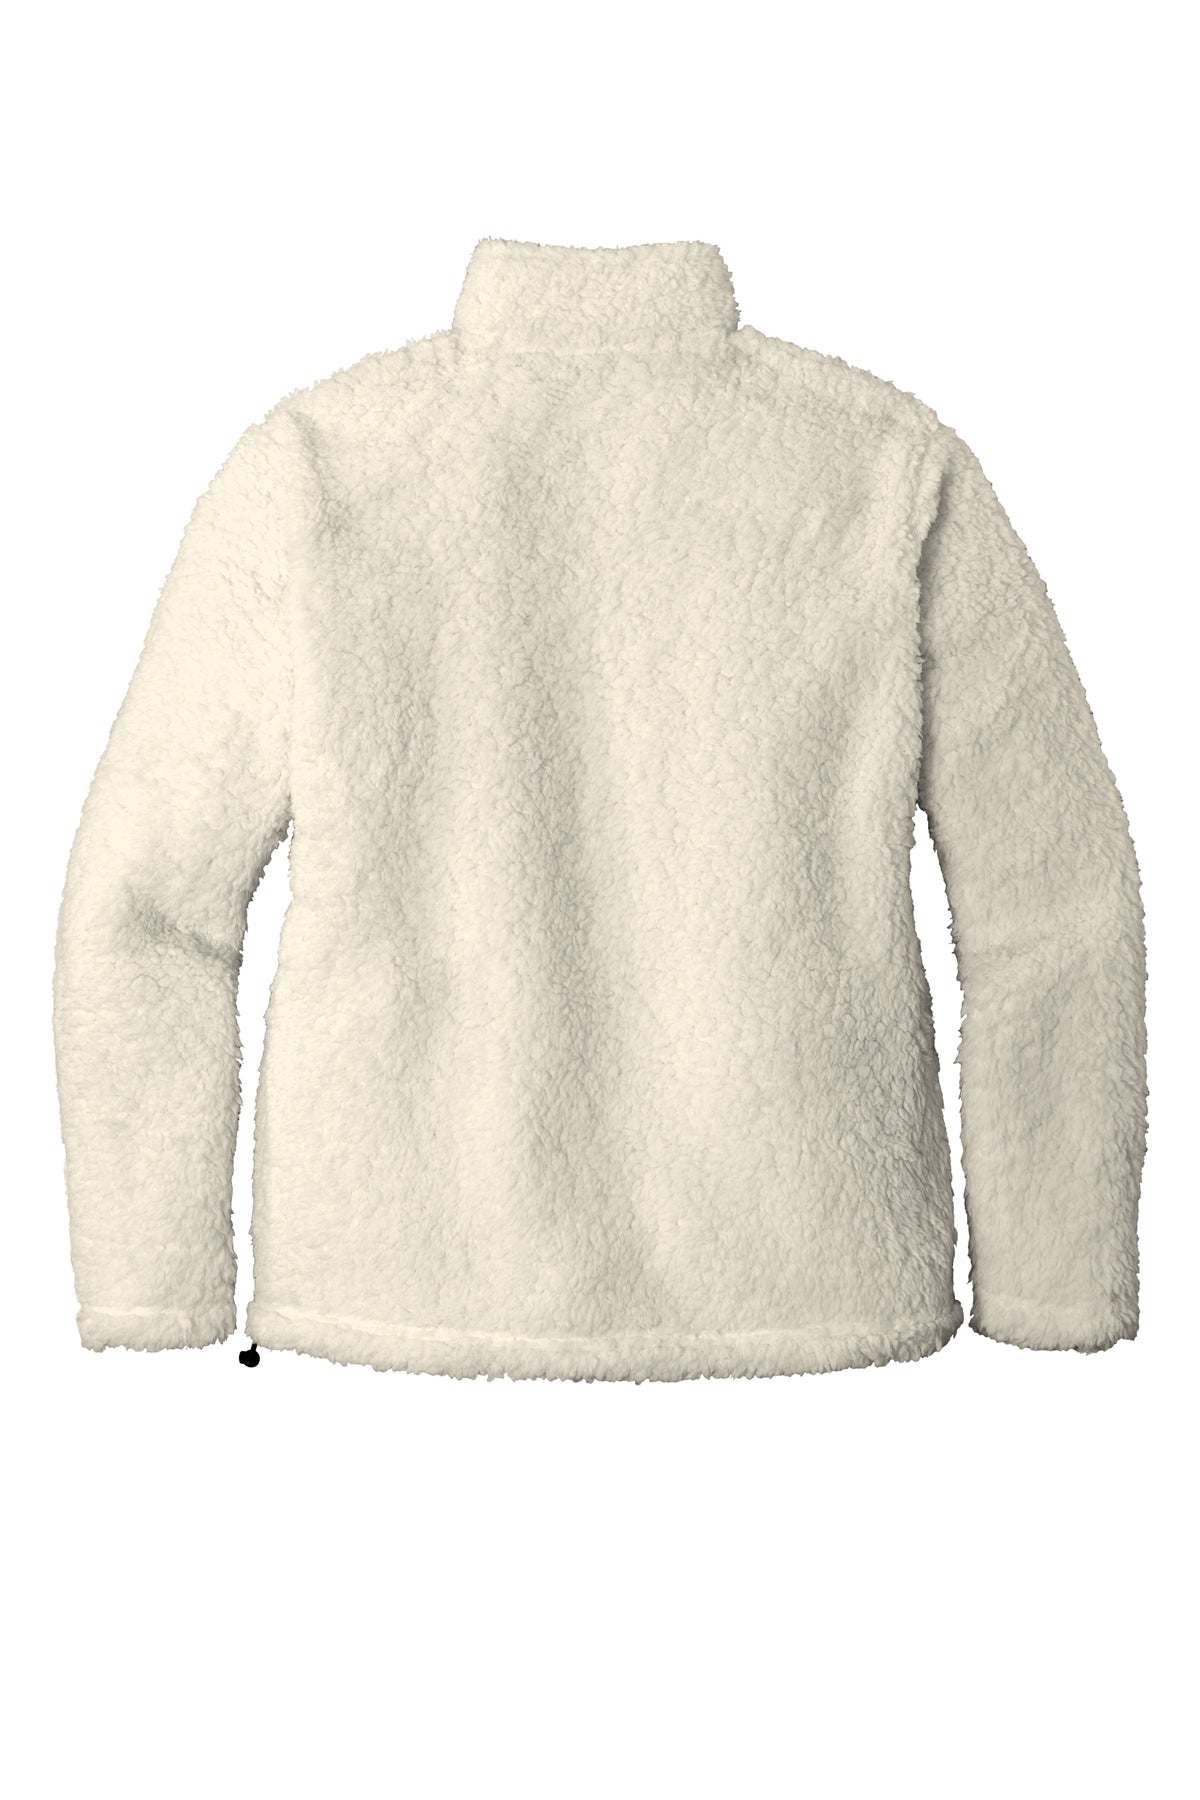 L131 Port Authority® Ladies Cozy Fleece Jacket